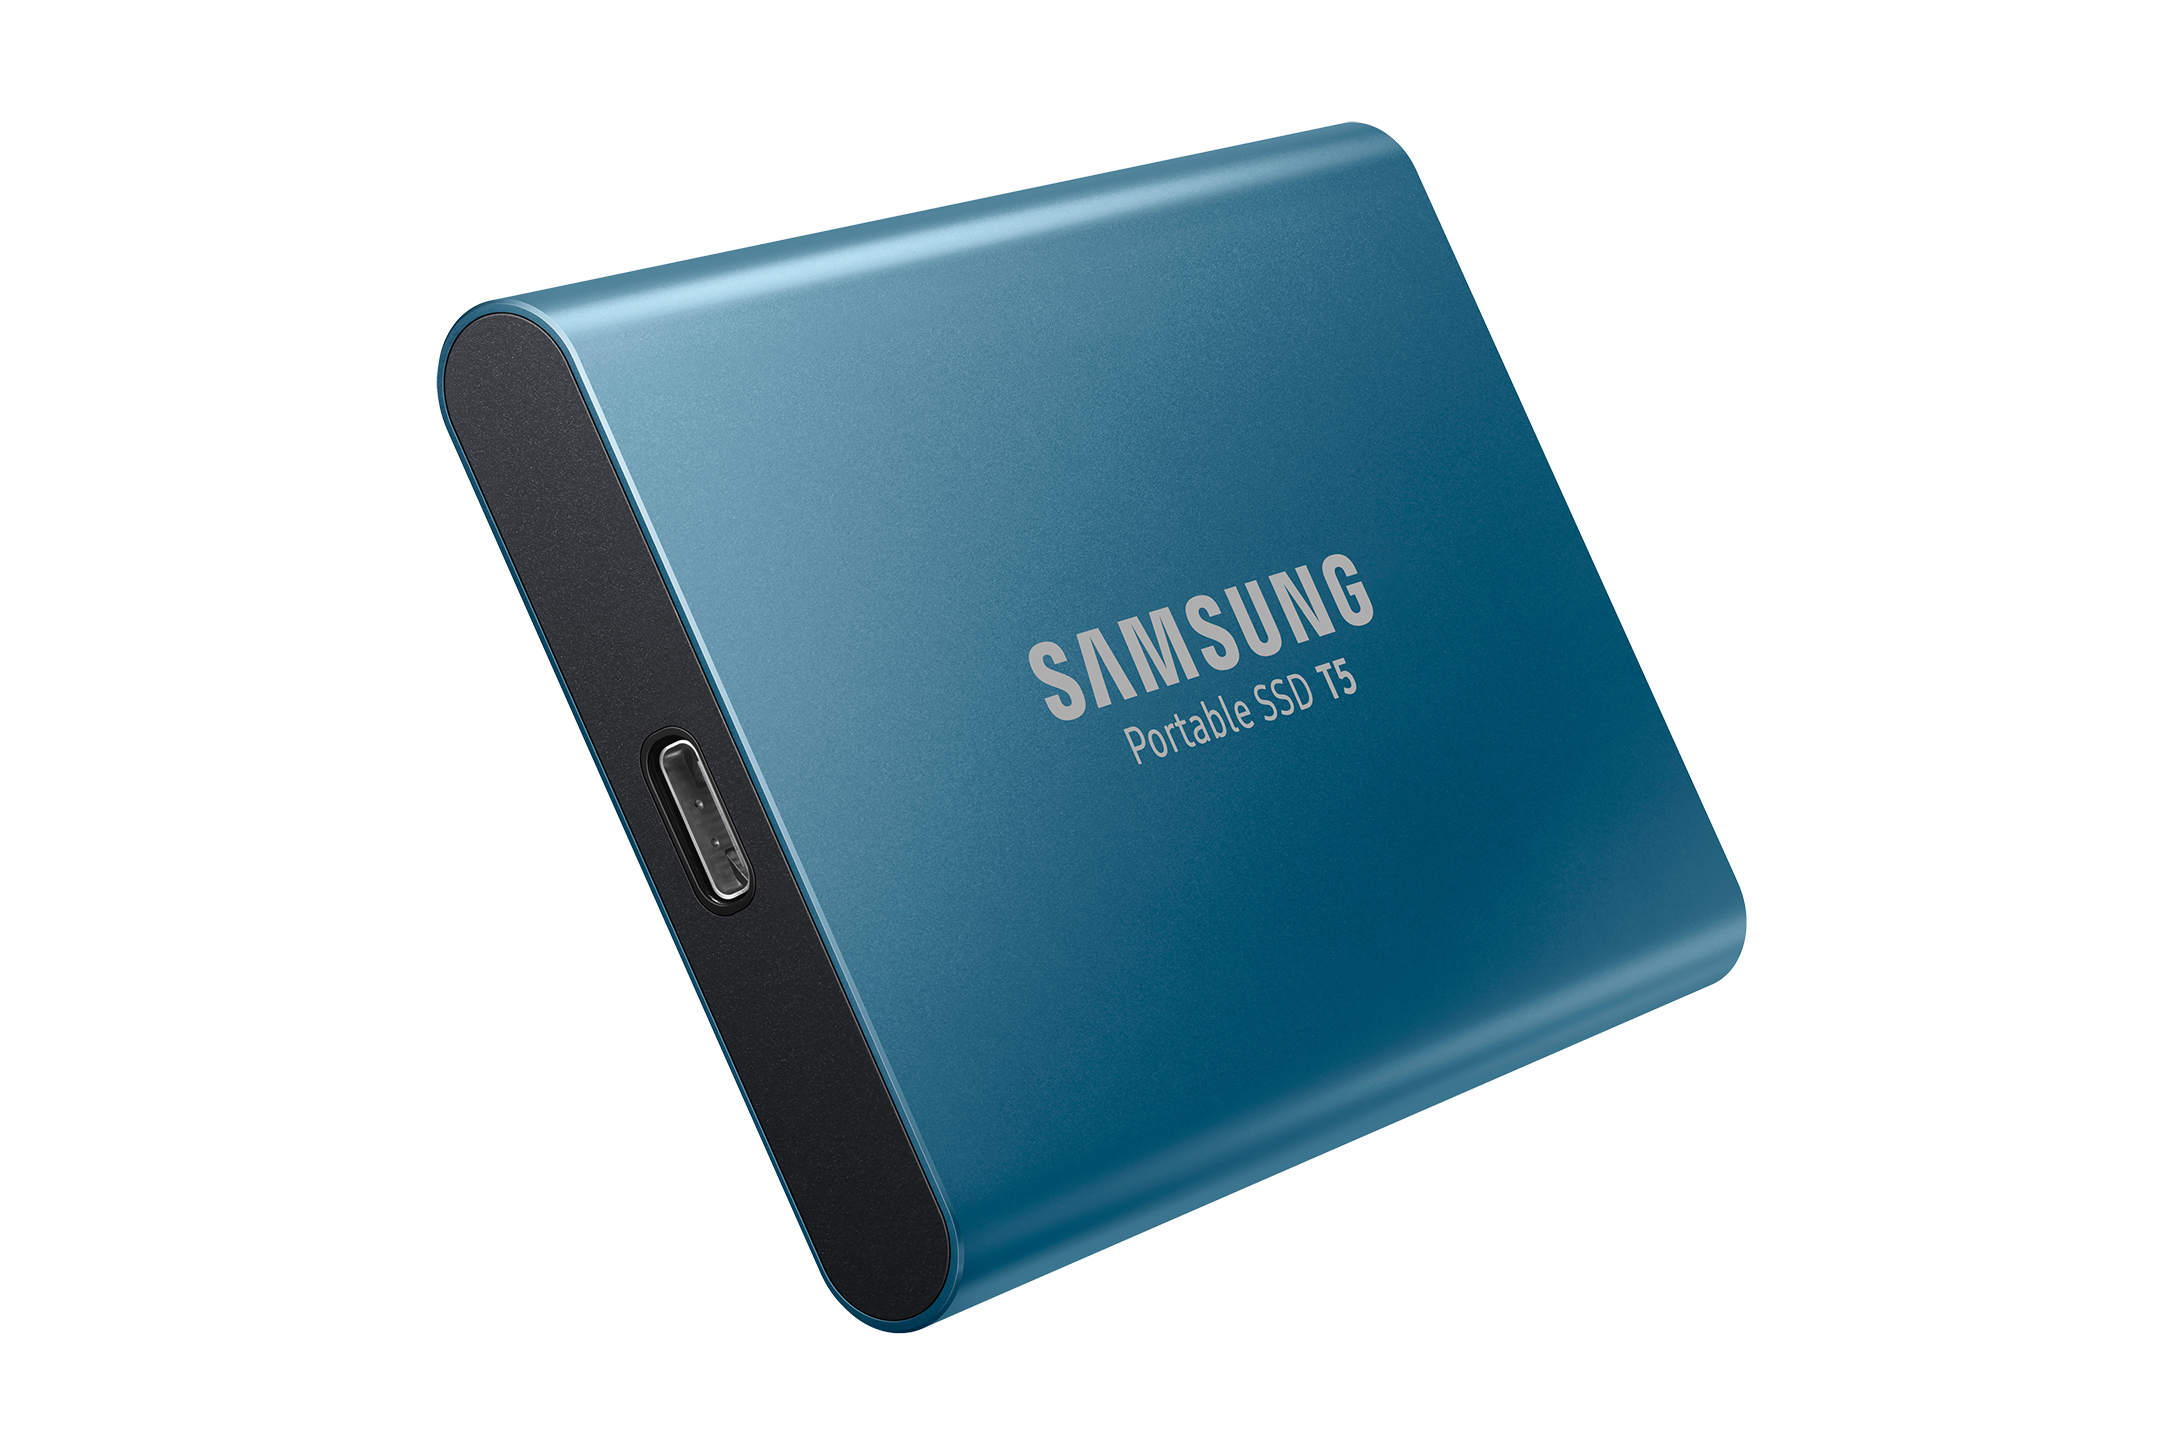 Samsung Portabel SSD T5, Perangkat Mungil Kinerja Cepat